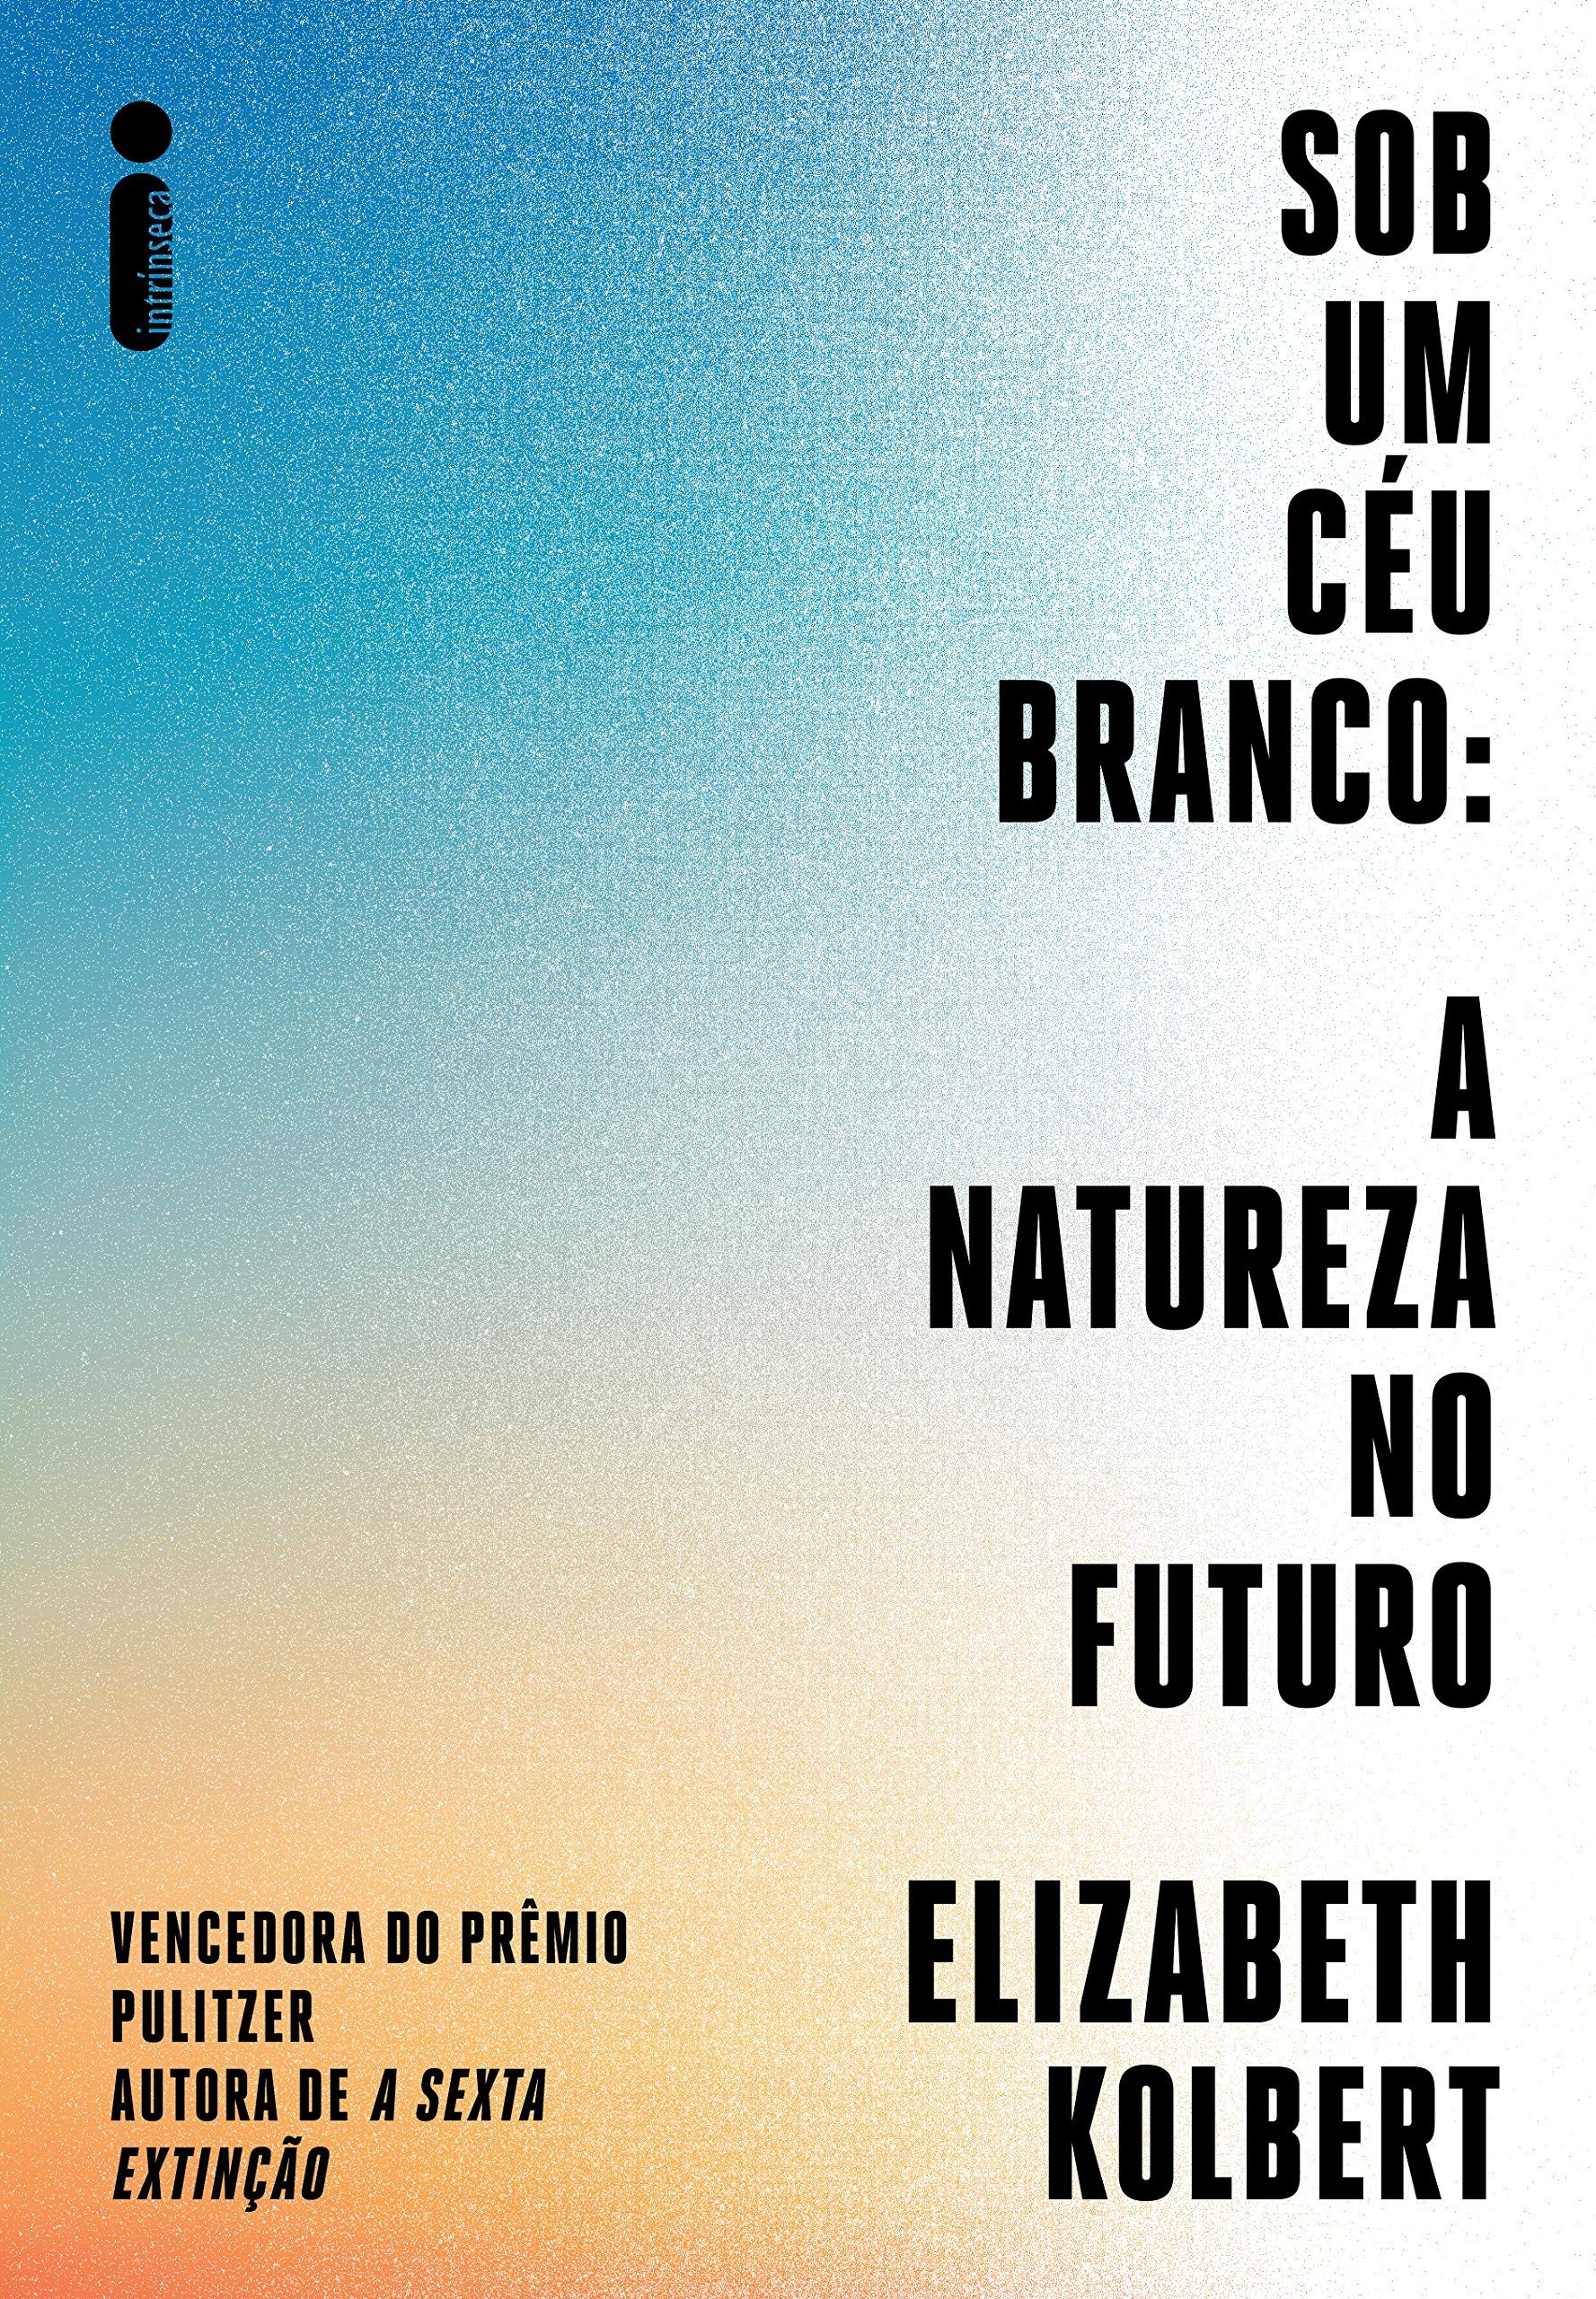 Sob um céu branco: a natureza no futuro, de Elizabeth Kolbert (Intrínseca, 224 páginas, R$ 49,90) (Foto: Divulgação)